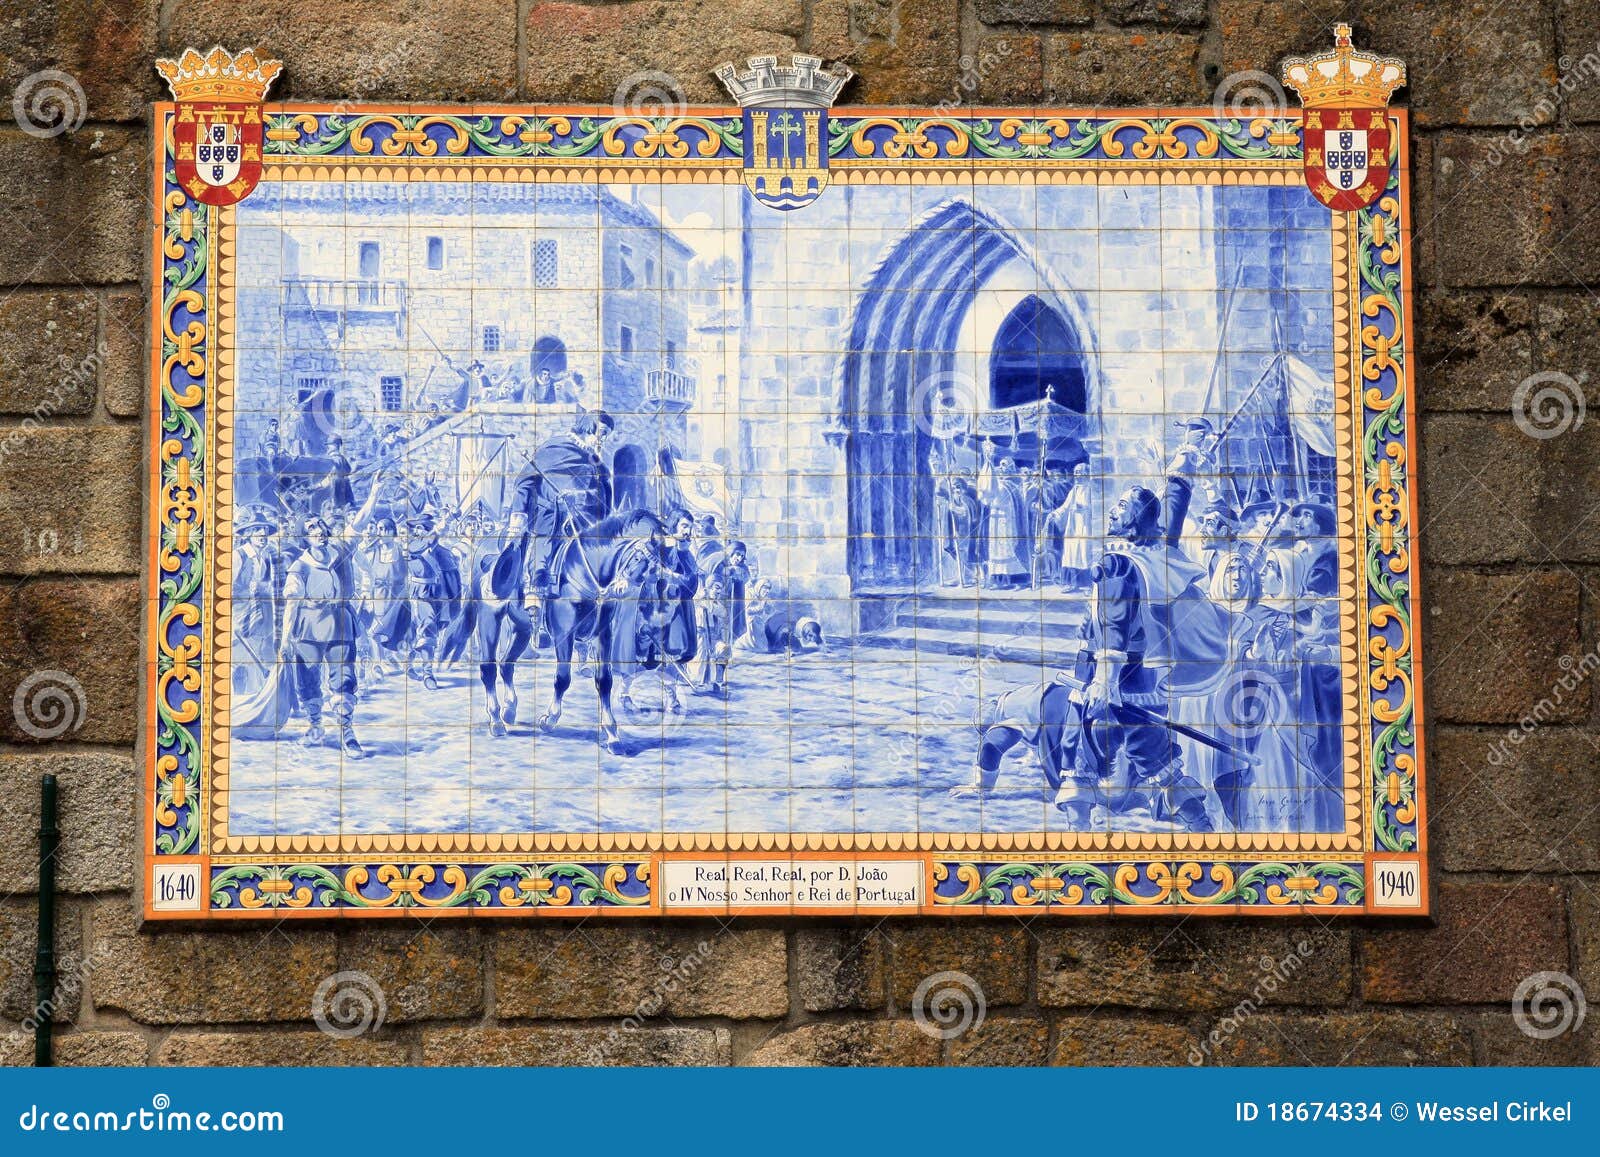 portuguese azulejo in the town of ponte de lima